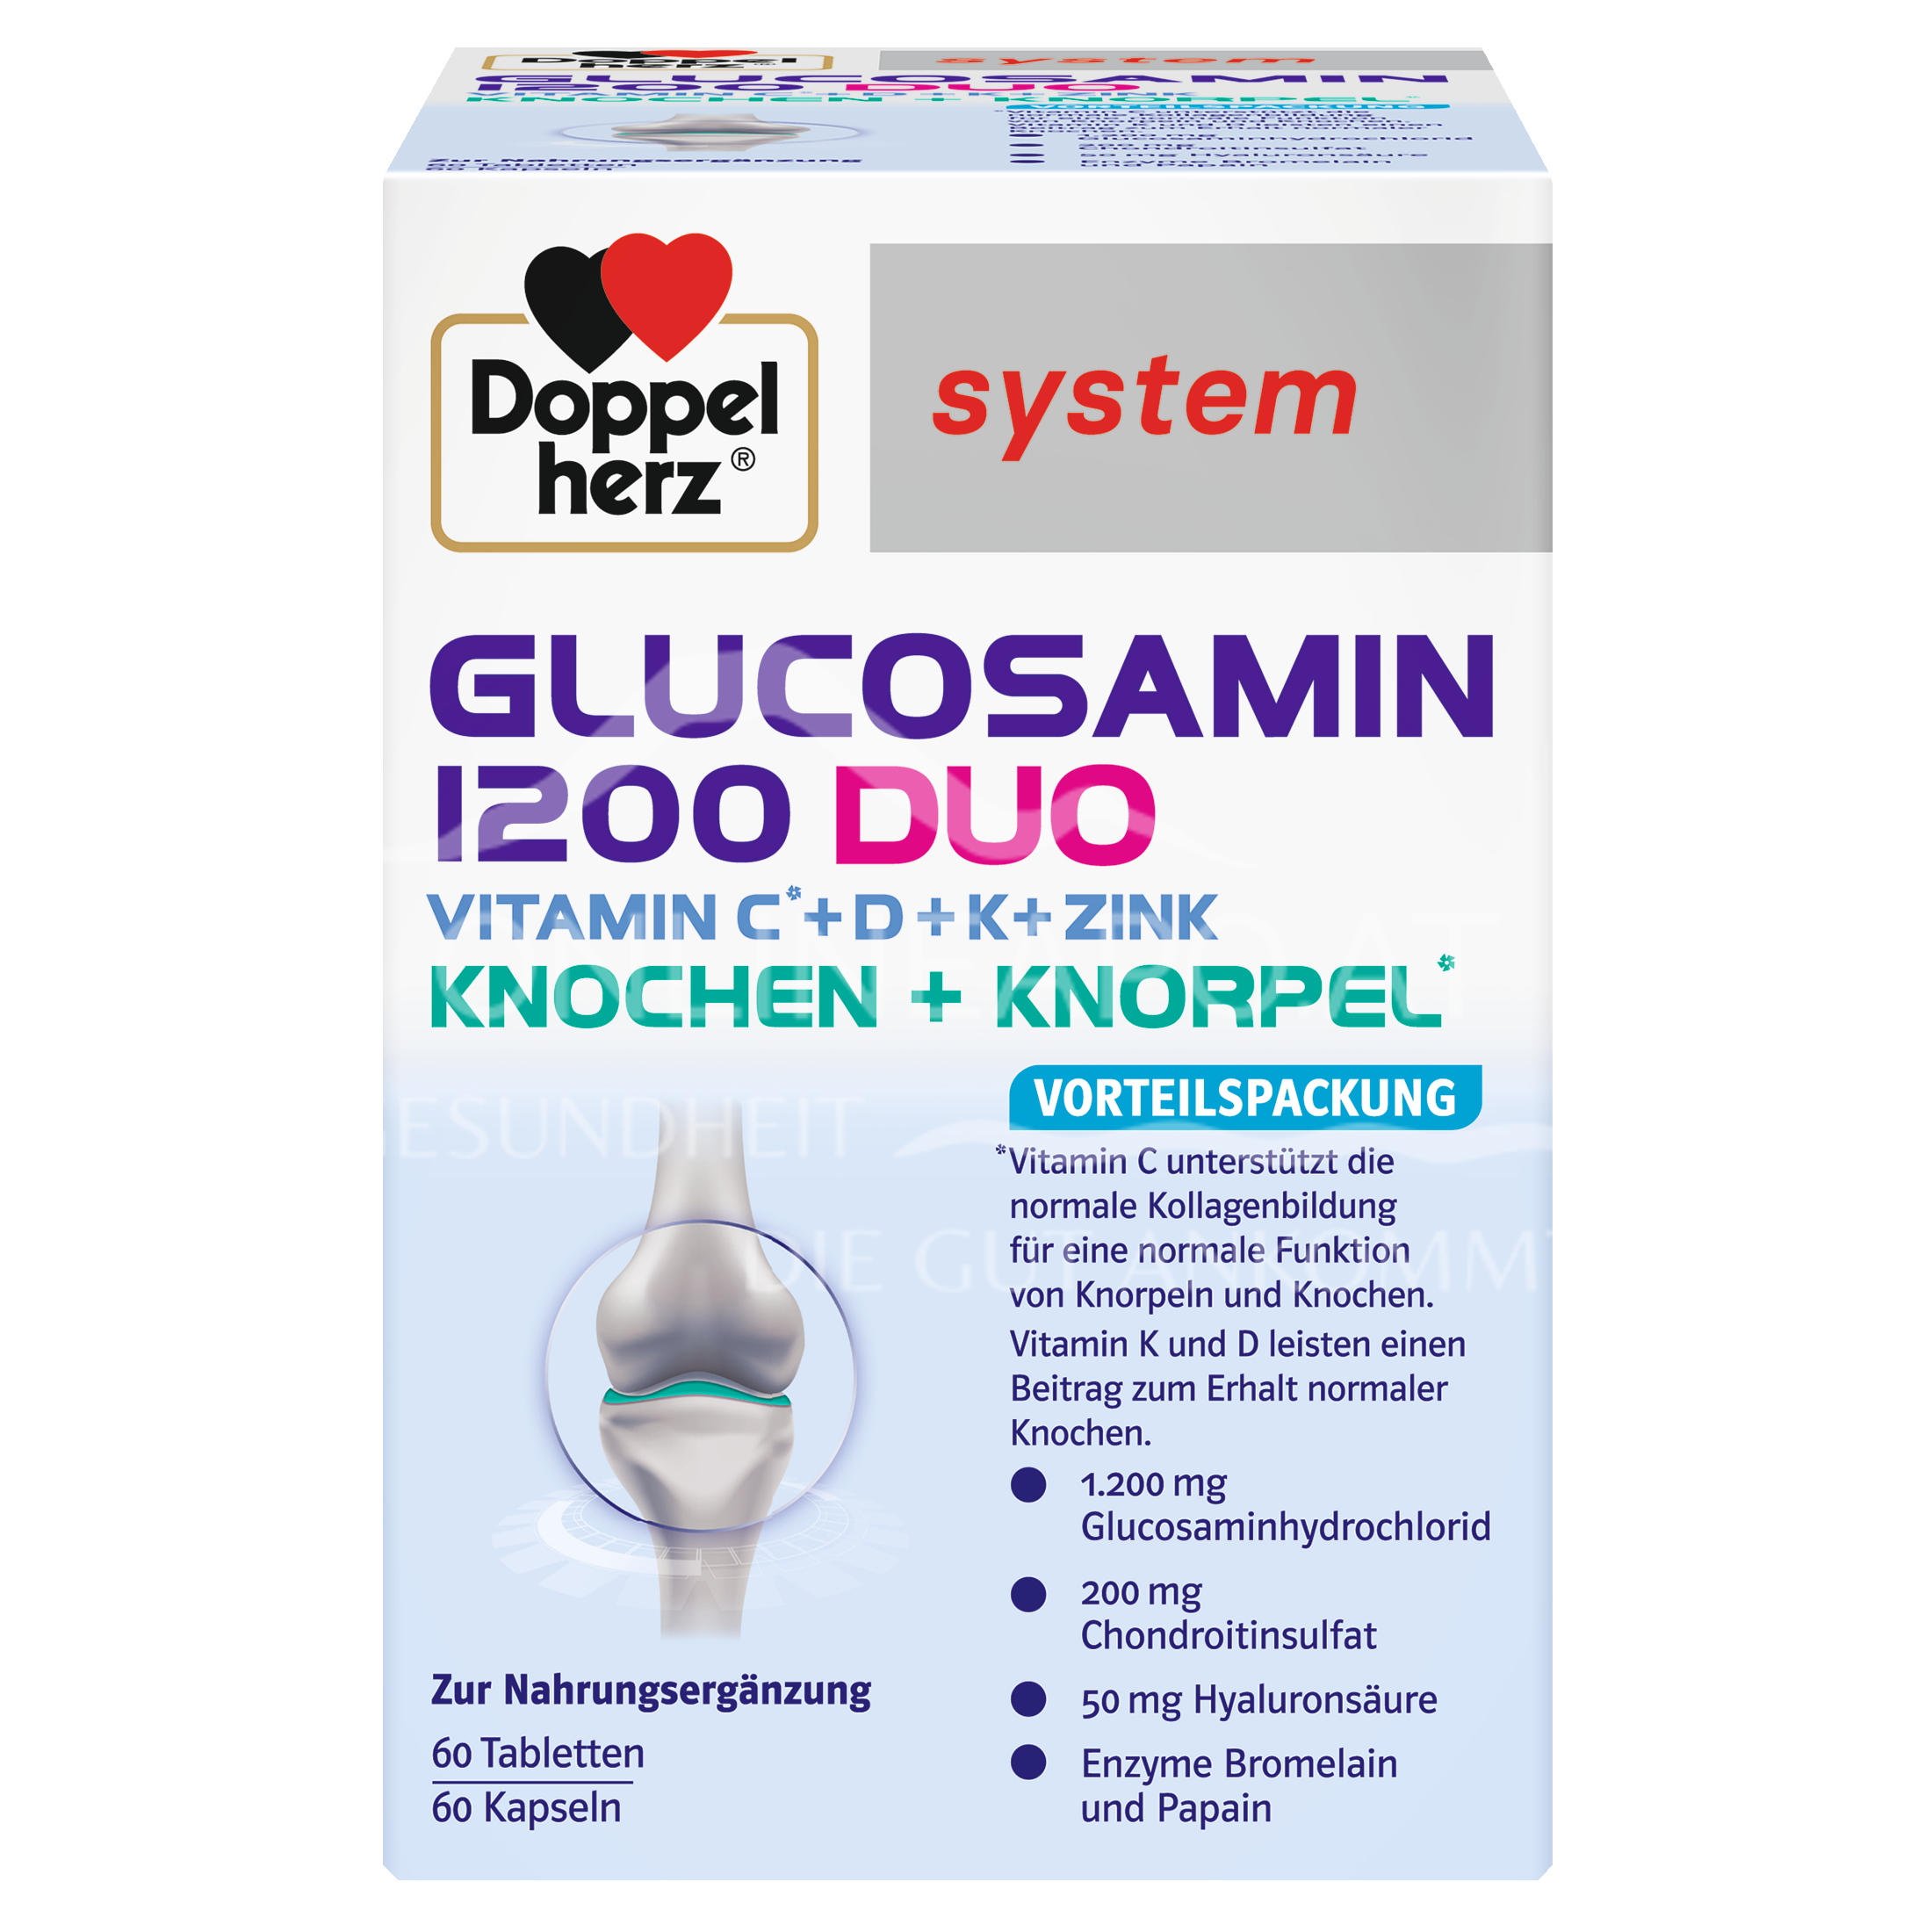 Doppelherz system GLUCOSAMIN 1200 DUO KNOCHEN + KNORPEL Tabletten & Kapseln